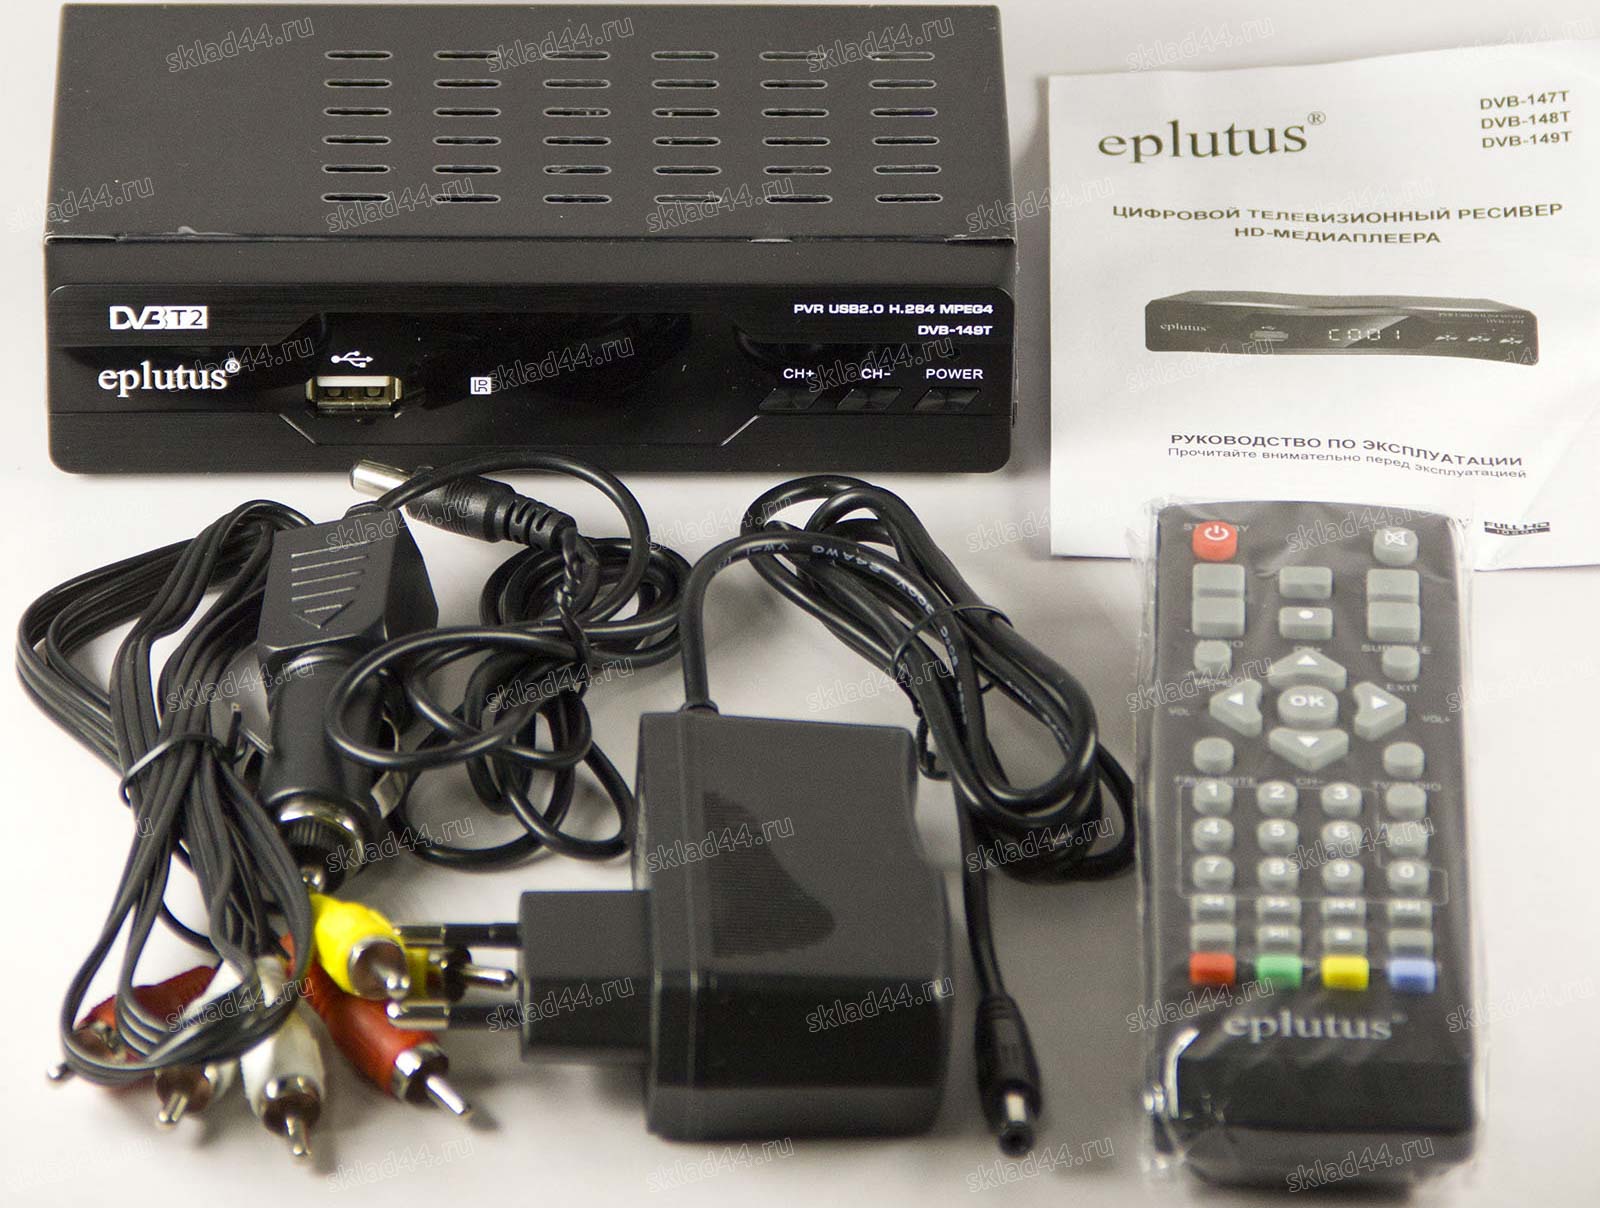 Приставка на 20 каналов днс. TV-тюнер Eplutus DVB-149t. Eplutus DVB-149t. Приставка ресивер для телевизора t55d 20 канальный.